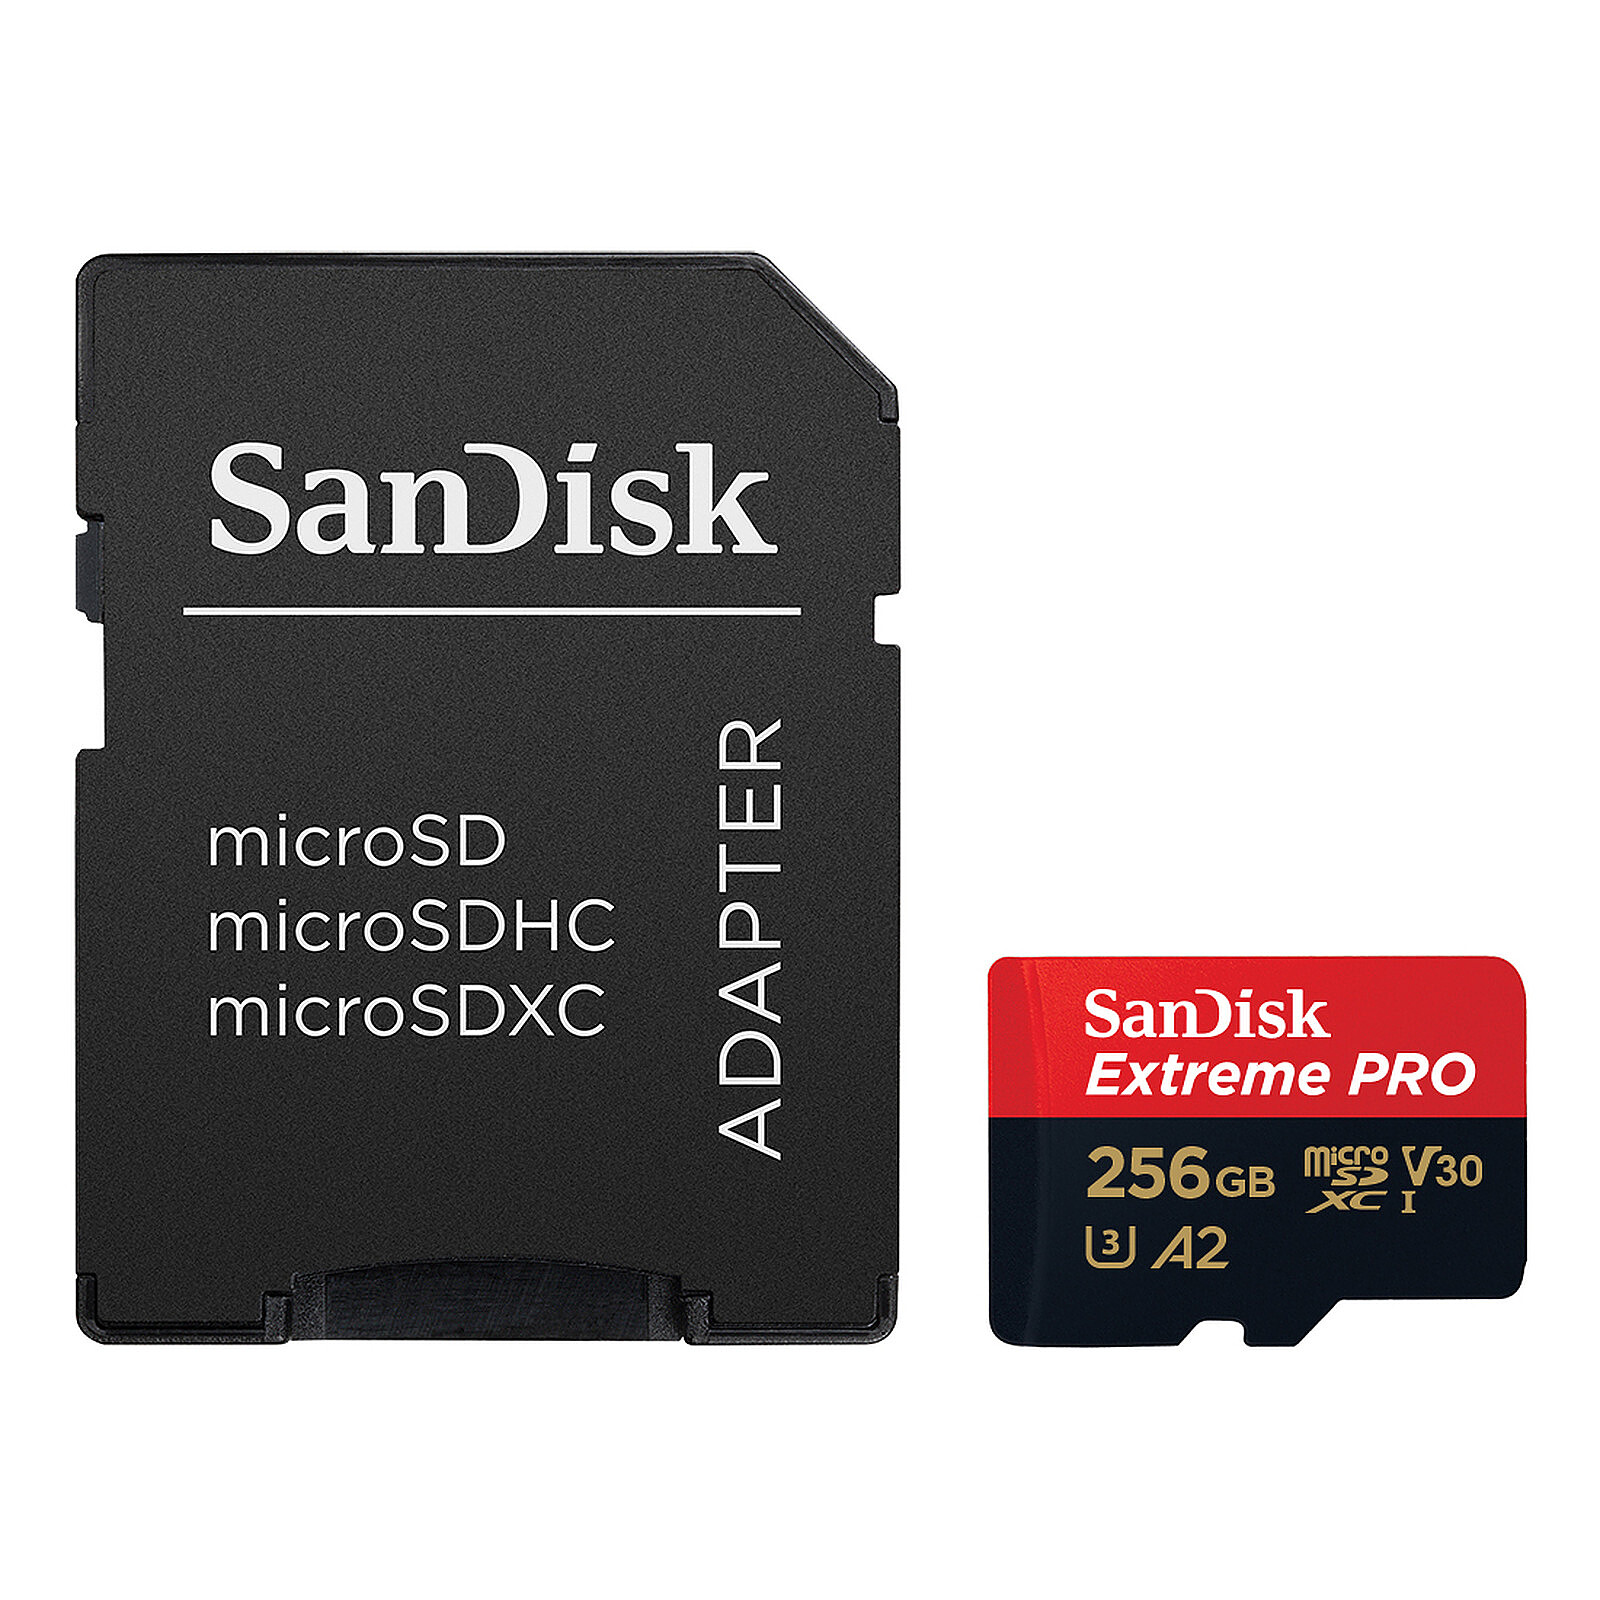 SanDisk Extreme PRO microSDXC UHS-I U3 256 GB + SD Adapter